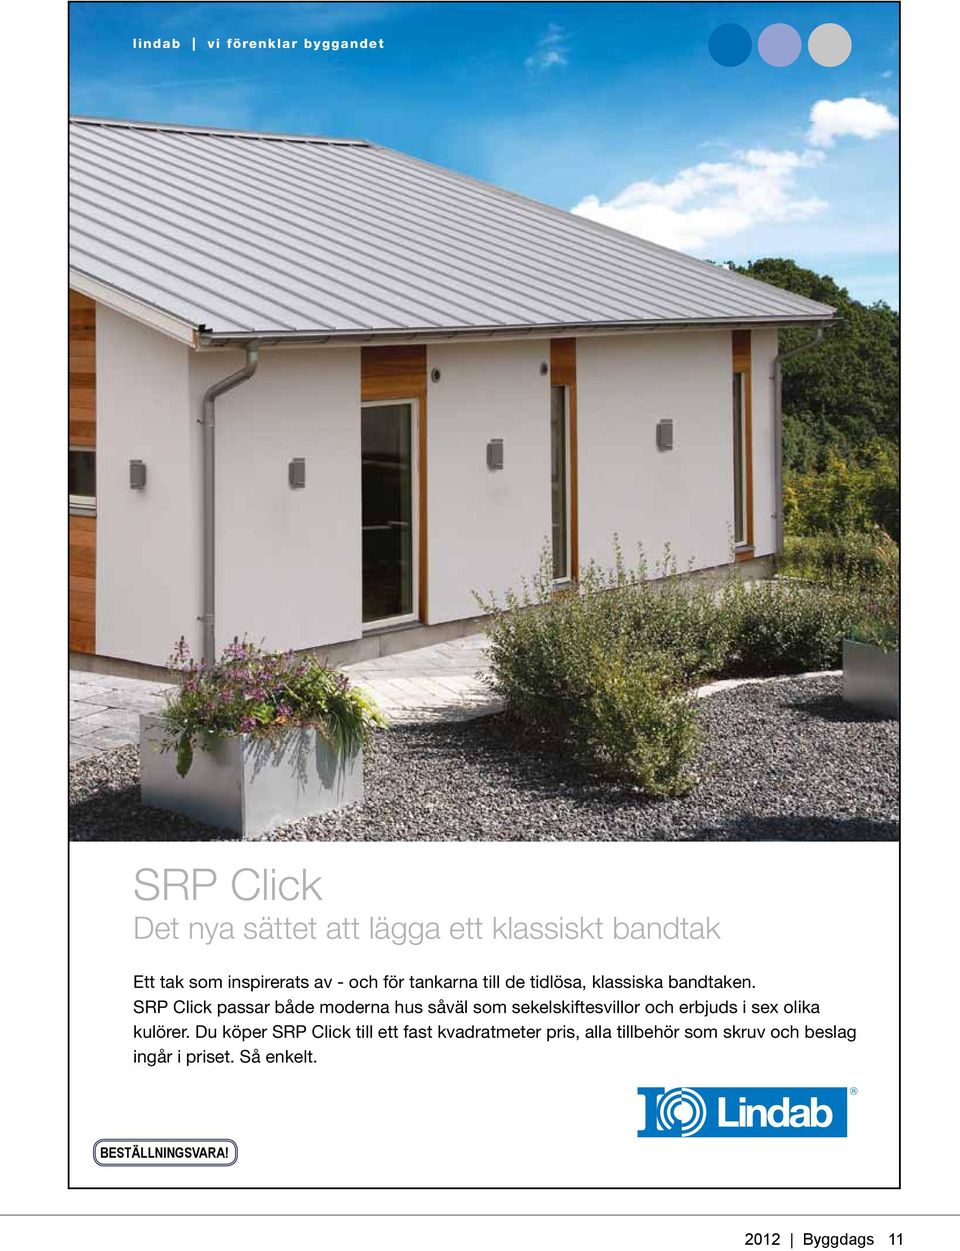 SRP Click passar både moderna hus såväl som sekelskiftesvillor och erbjuds i sex olika kulörer.